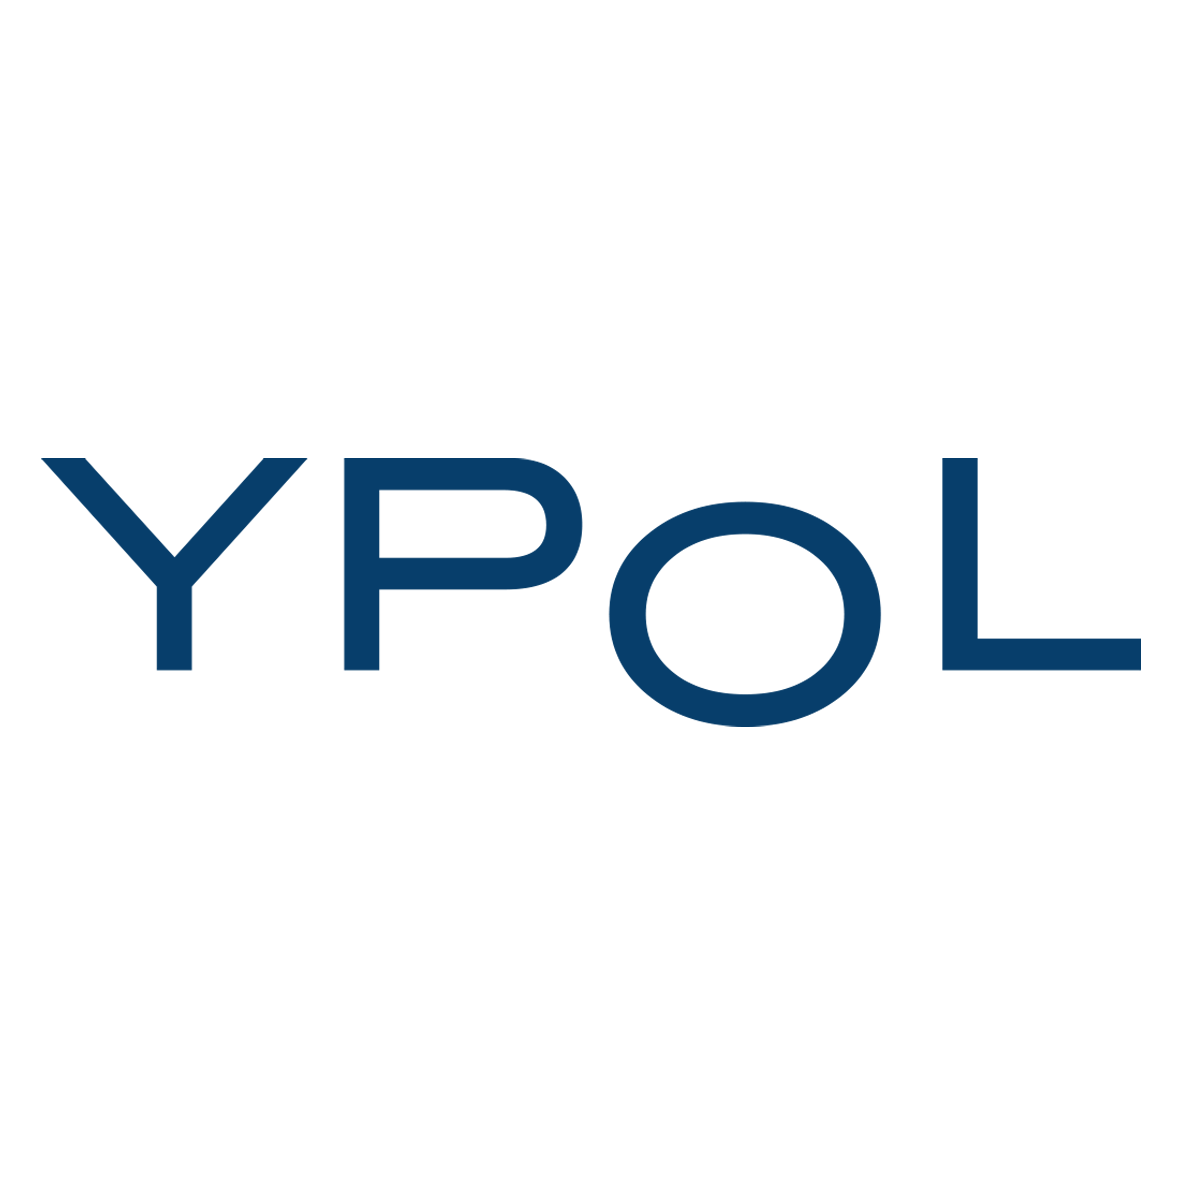 YPOL Lawyers Sydney